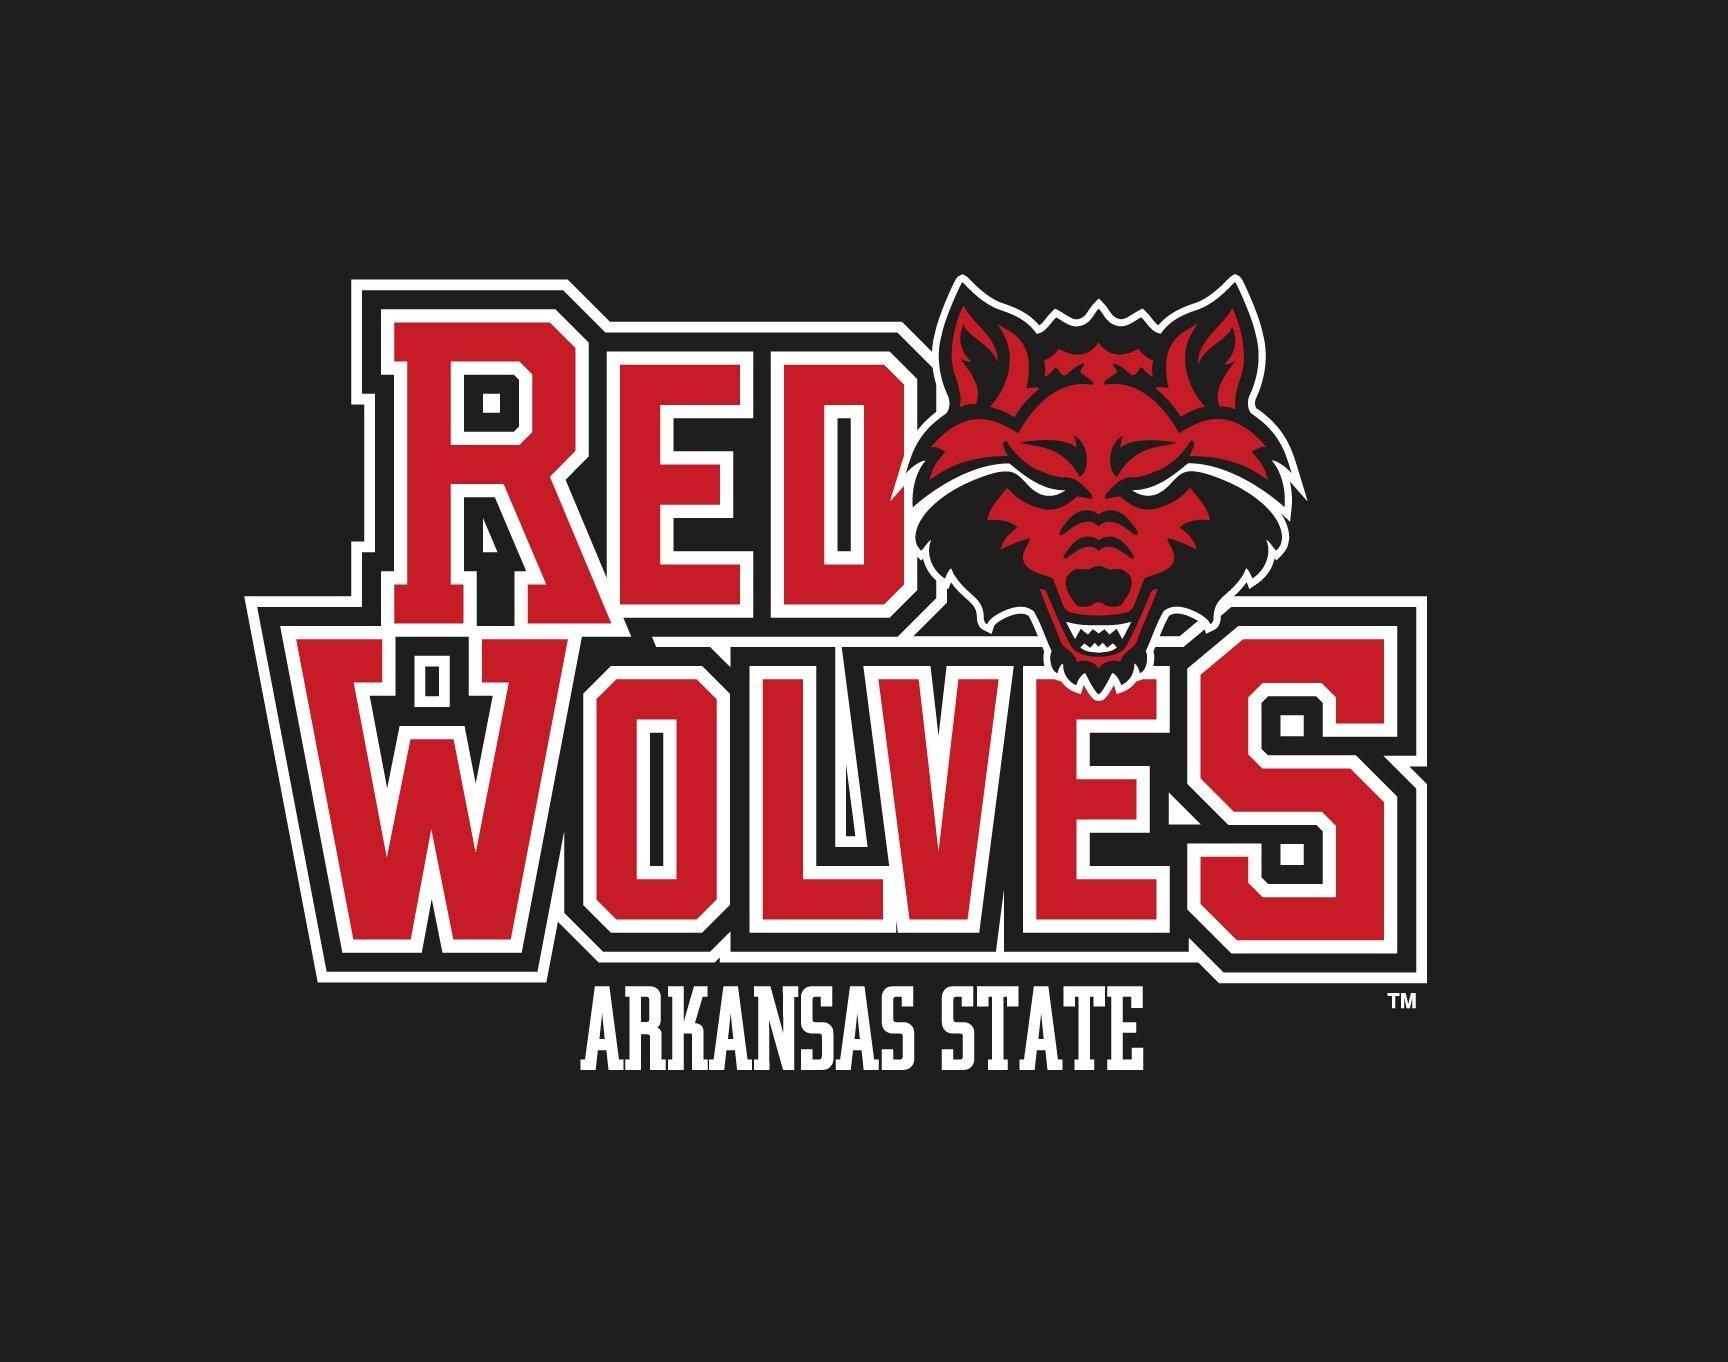 Arkansas State Red Wolves men's basketball